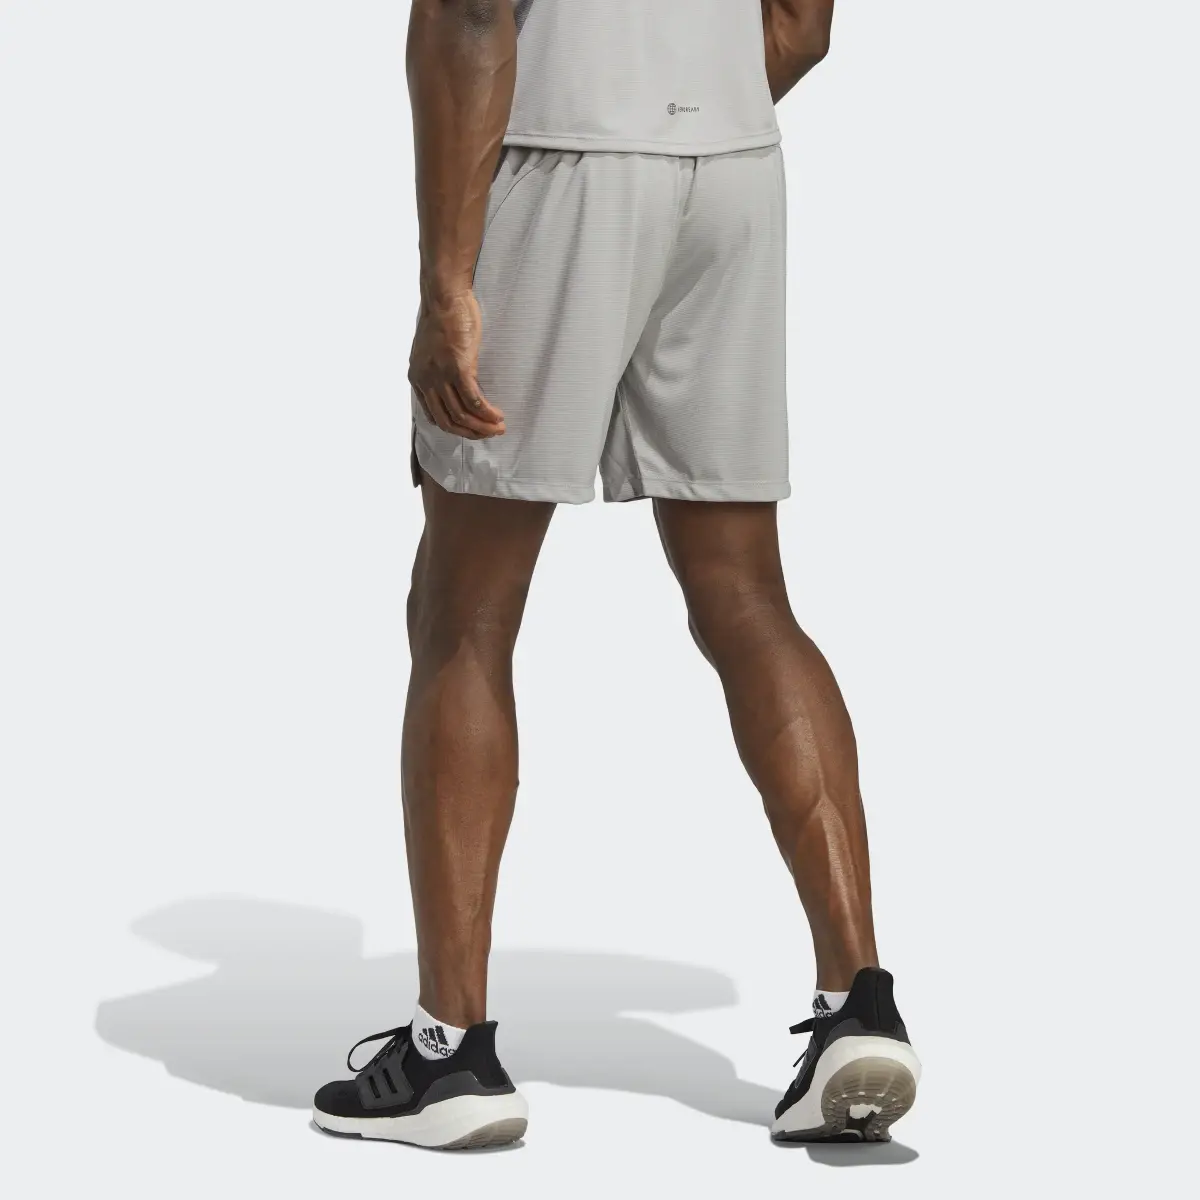 Adidas Short da allenamento PU Print. 2